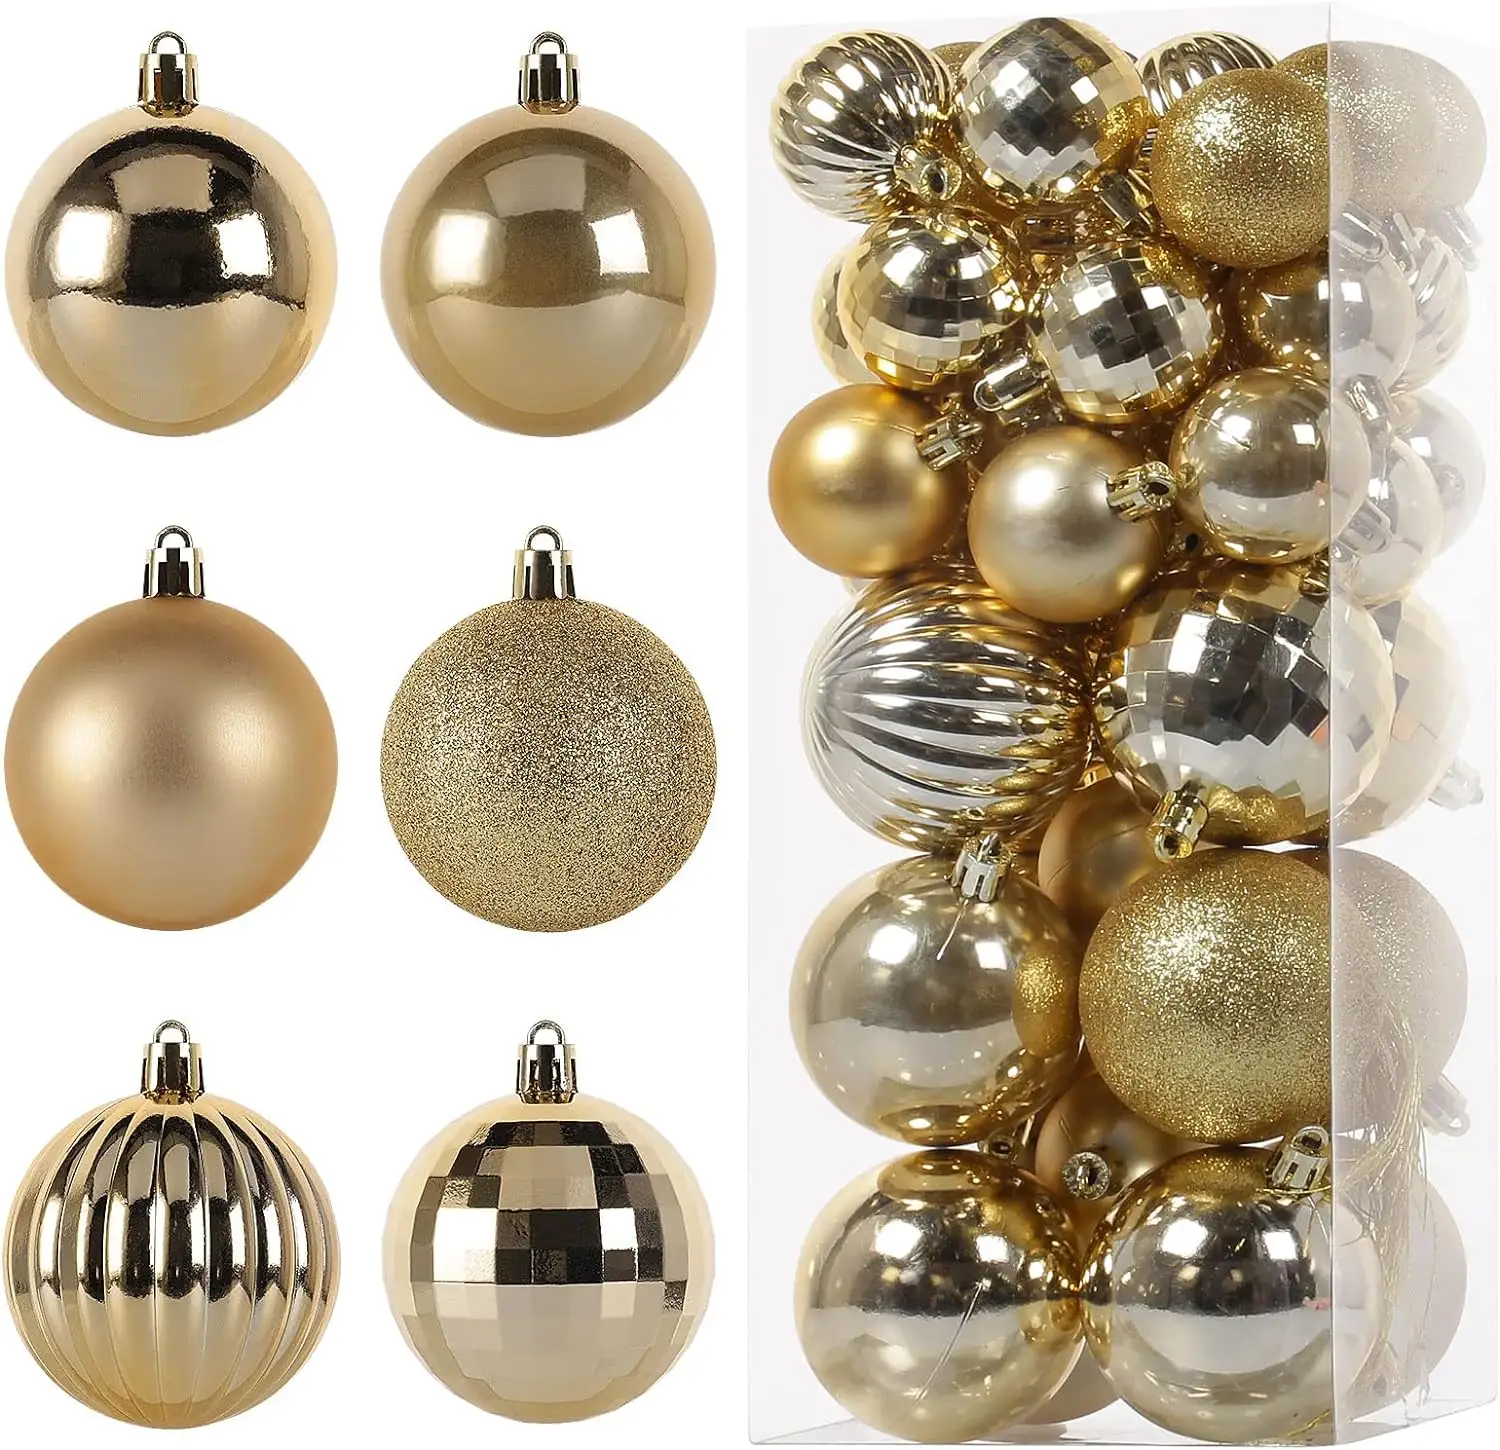 Bolas de Natal para decoração de árvore de Natal, bolas de Natal brilhantes para serigrafia, caixa de 6 unidades em PVC, itens mais vendidos